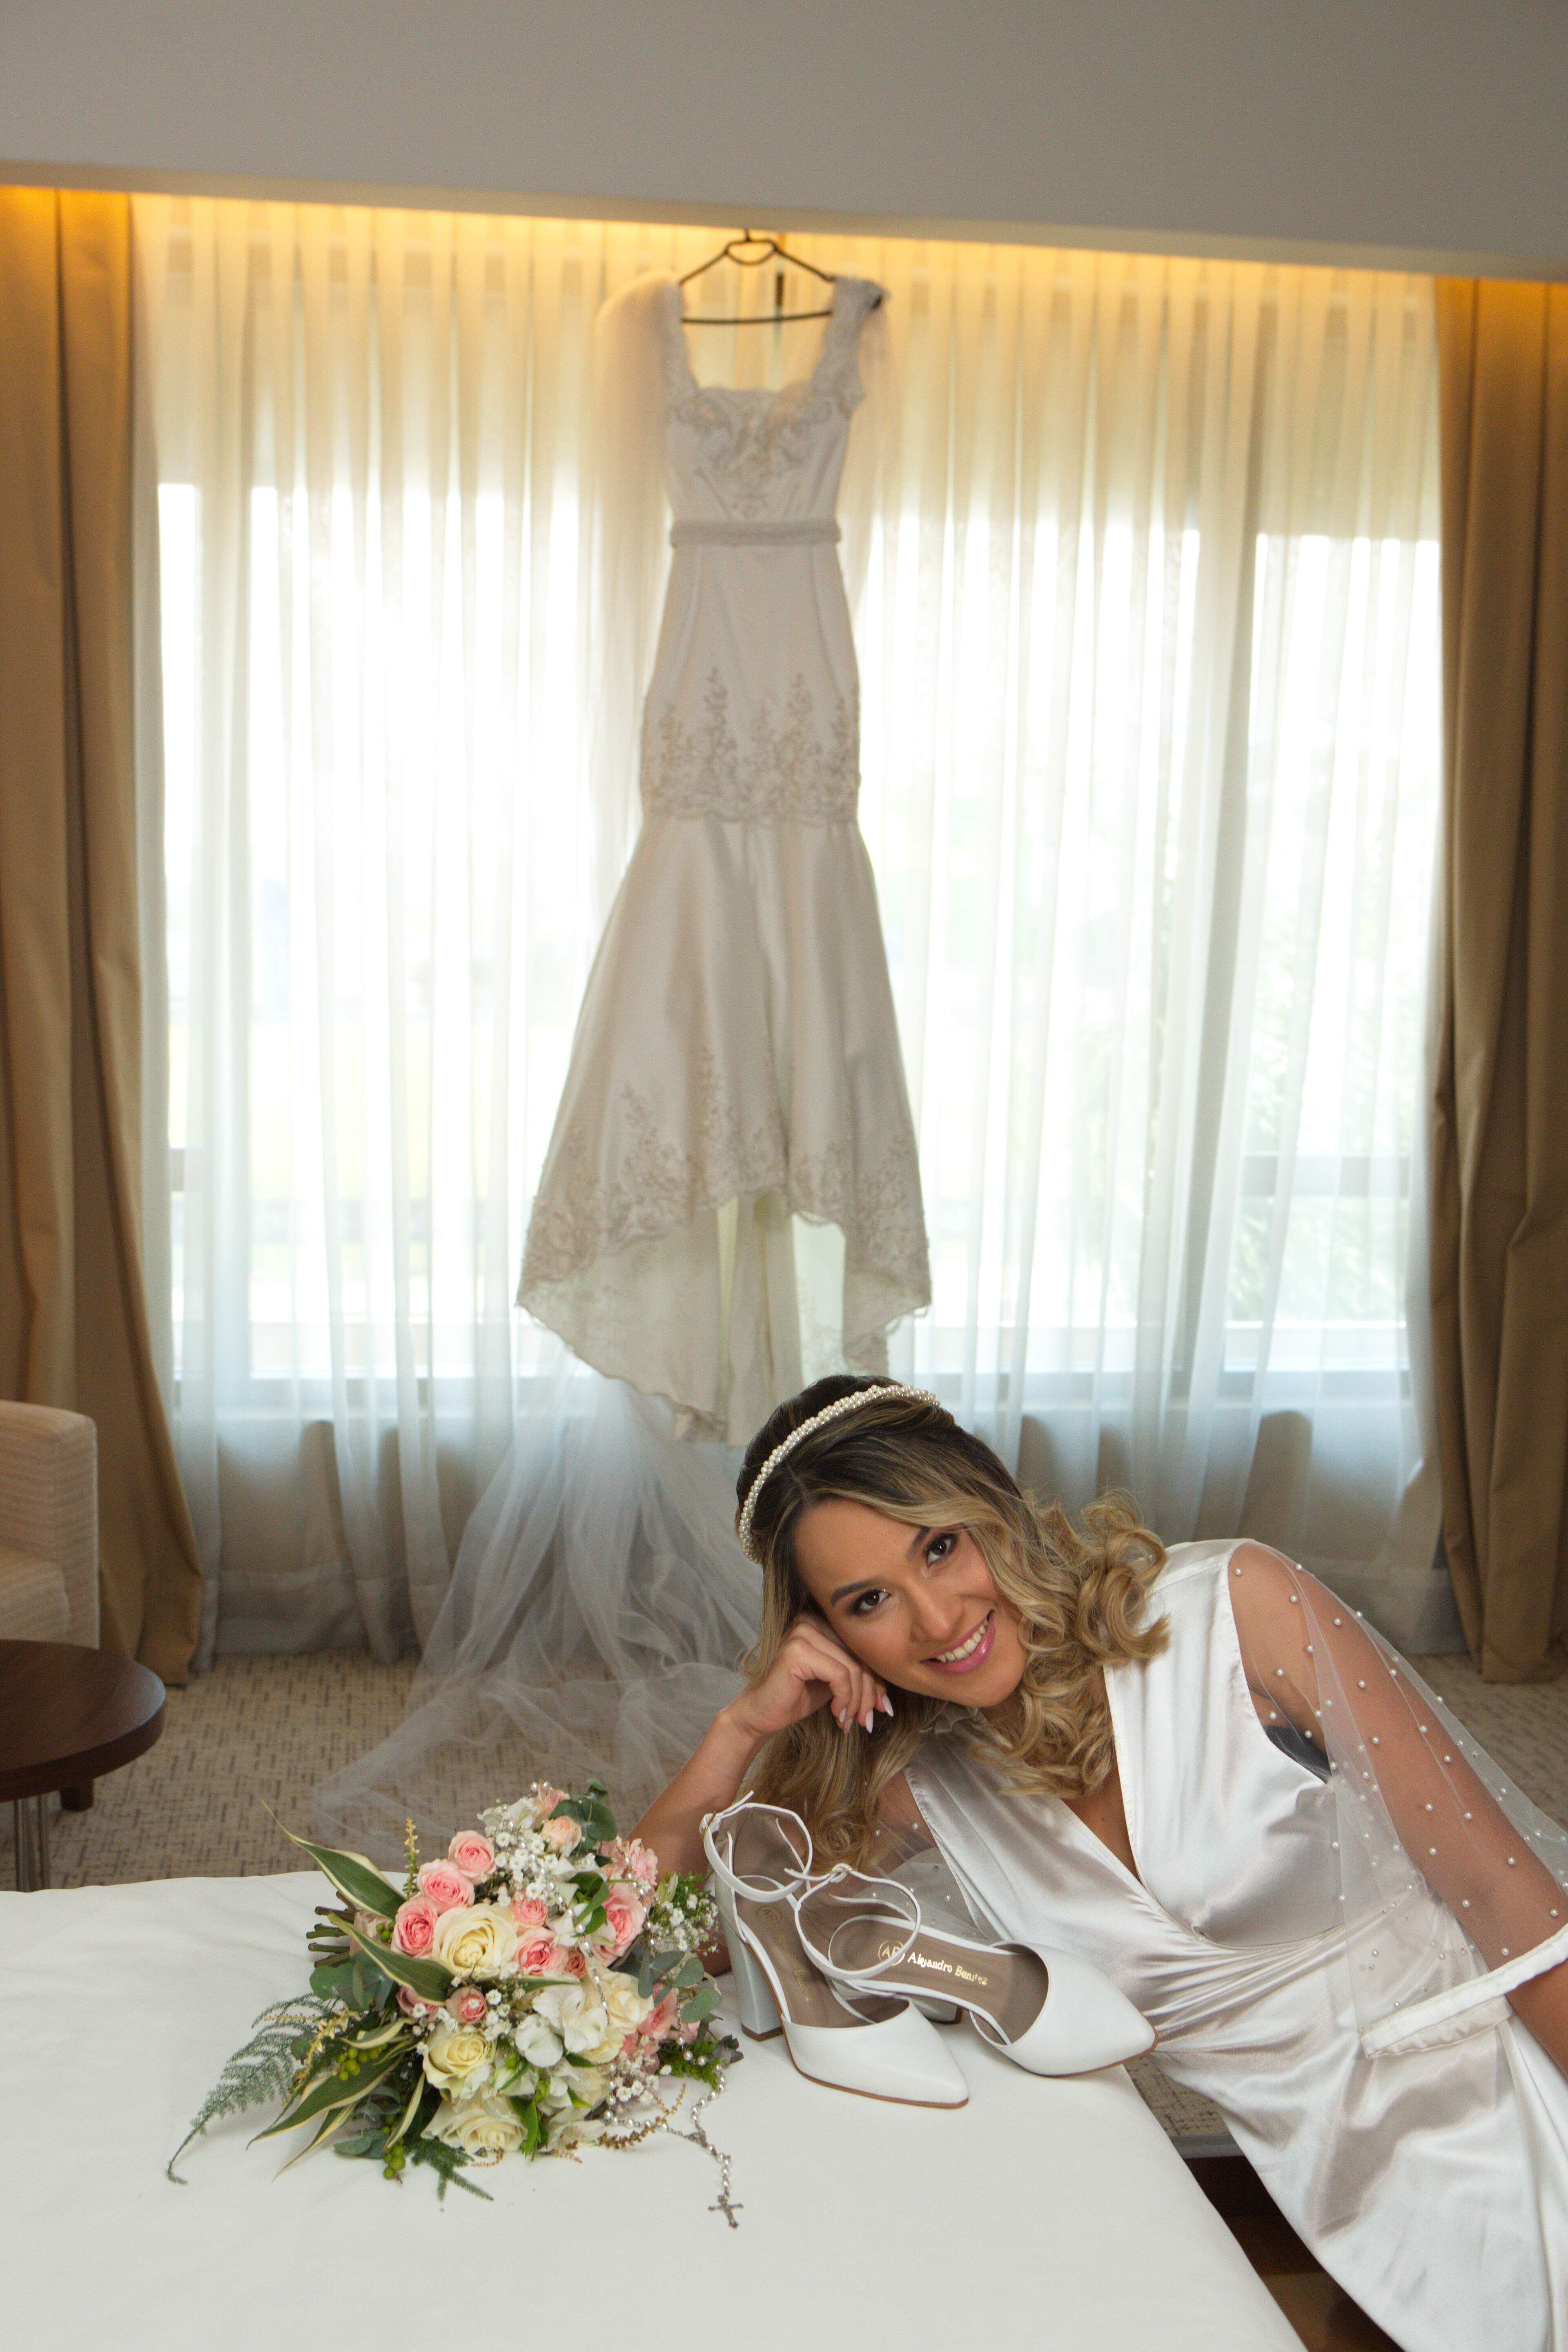 La novia lució radiante con un vestido diseñado y confeccionado por Juana Leiva y llevó un delicado ramo de flores naturales.